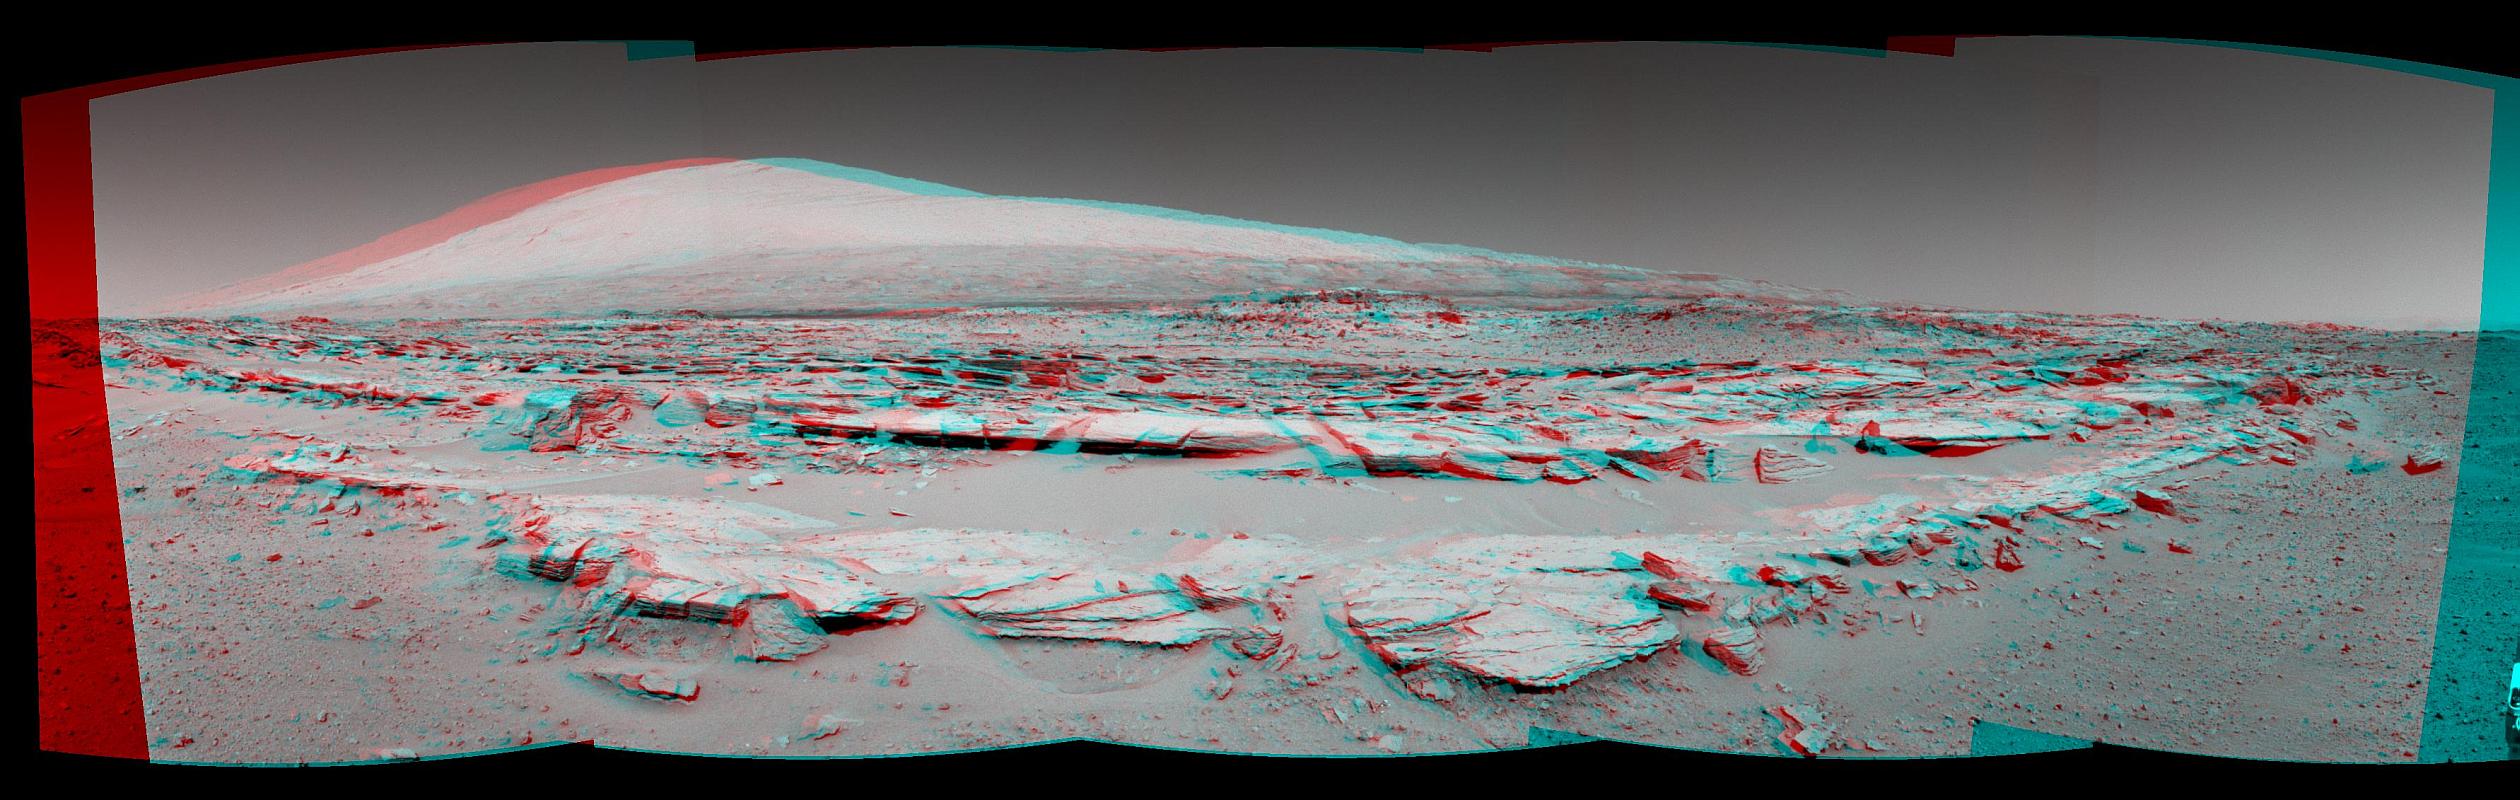 Martian 3D Panorama